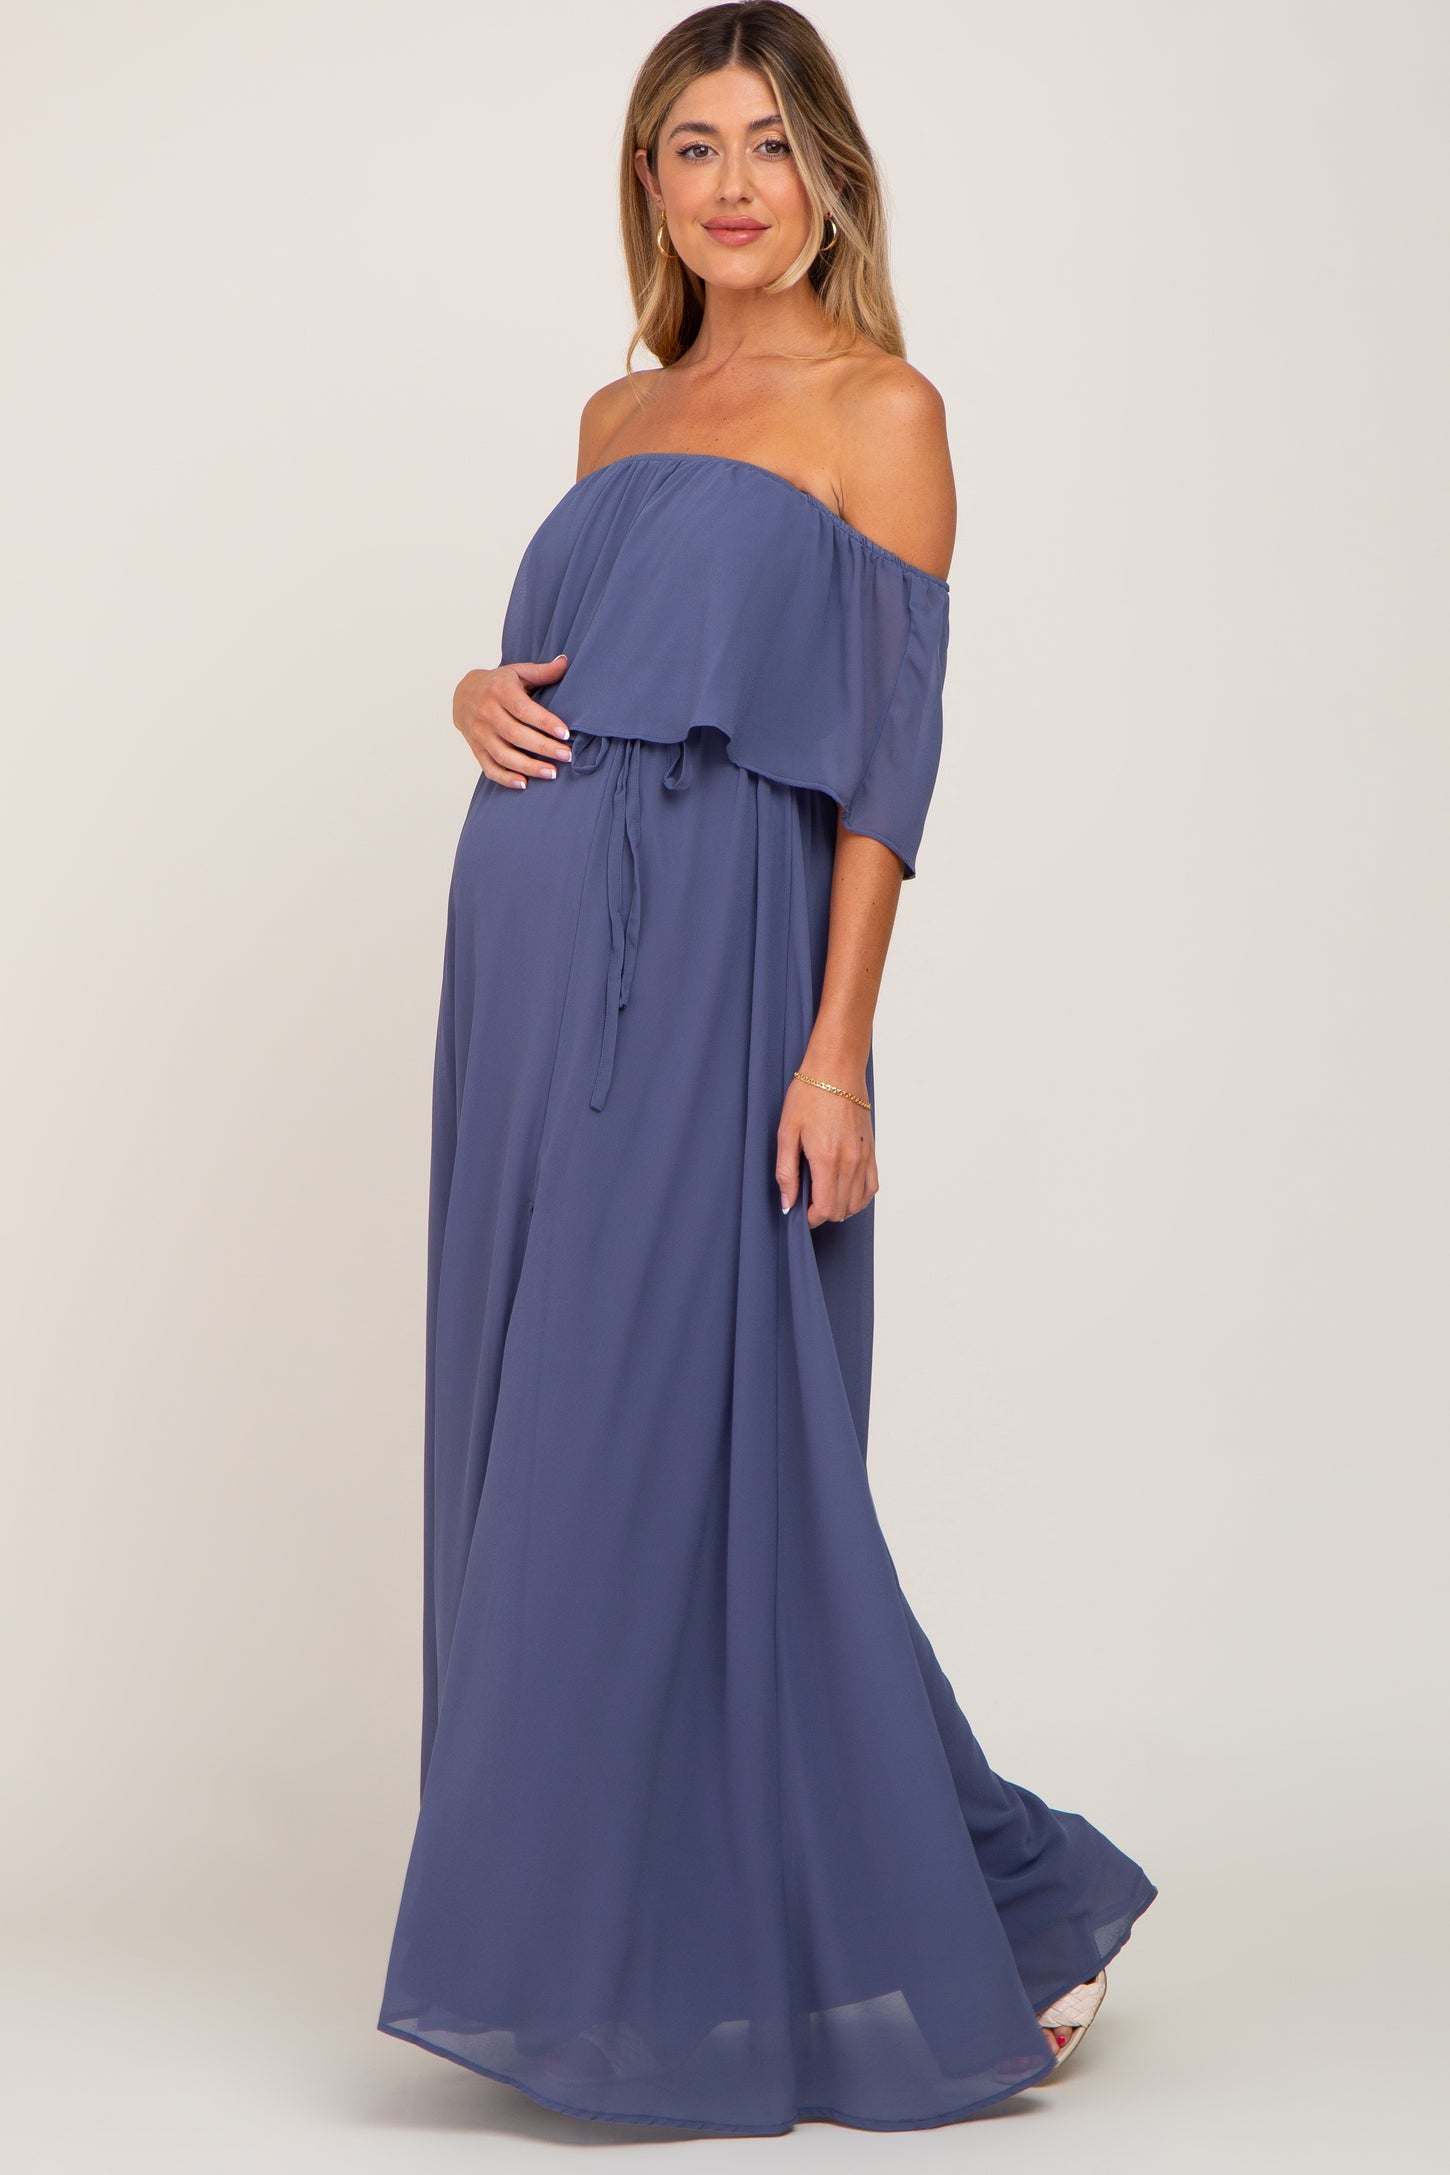 Blue Chiffon Off Shoulder Maternity Maxi Dress– PinkBlush